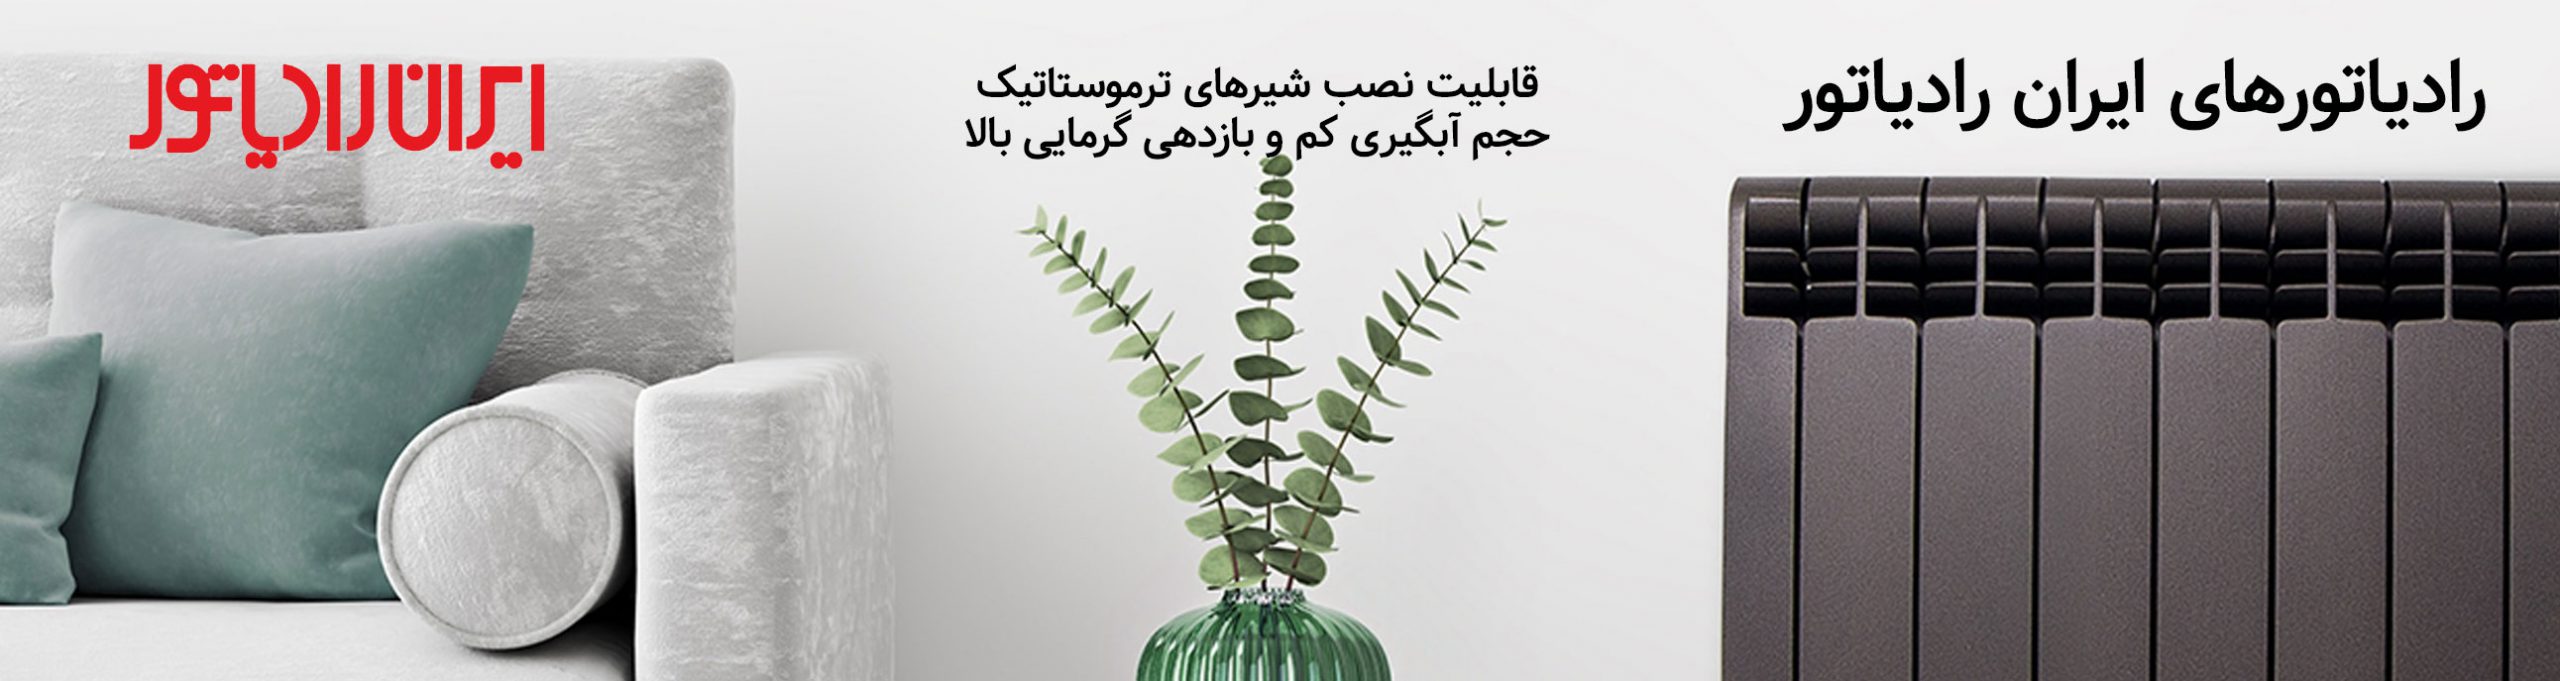 خرید رادیاتور ایران رادیاتور | Tasisatbank